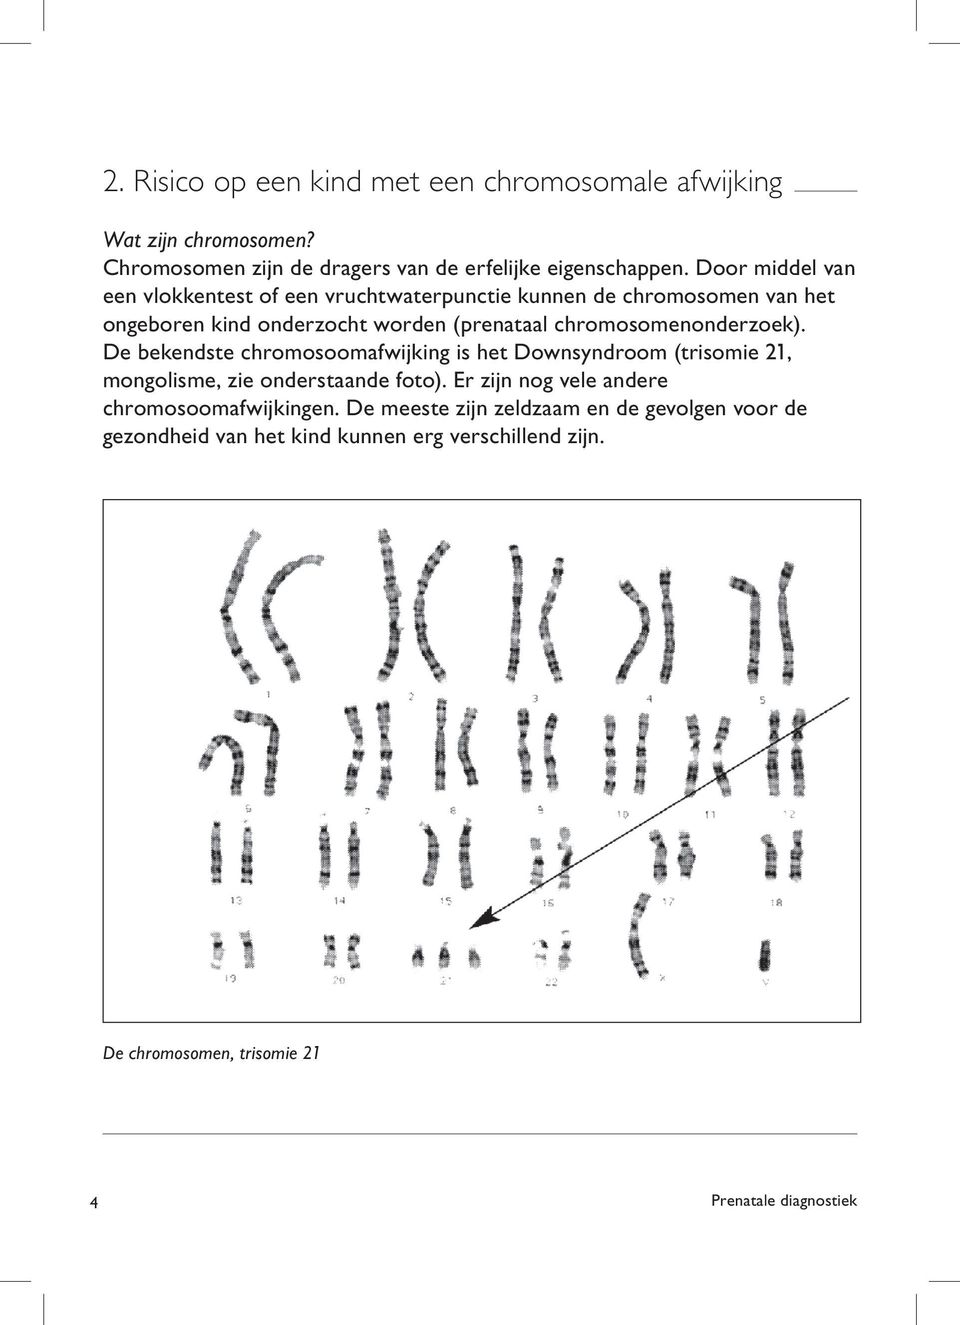 chromosomenonderzoek). De bekendste chromosoomafwijking is het Downsyndroom (trisomie 21, mongolisme, zie onderstaande foto).